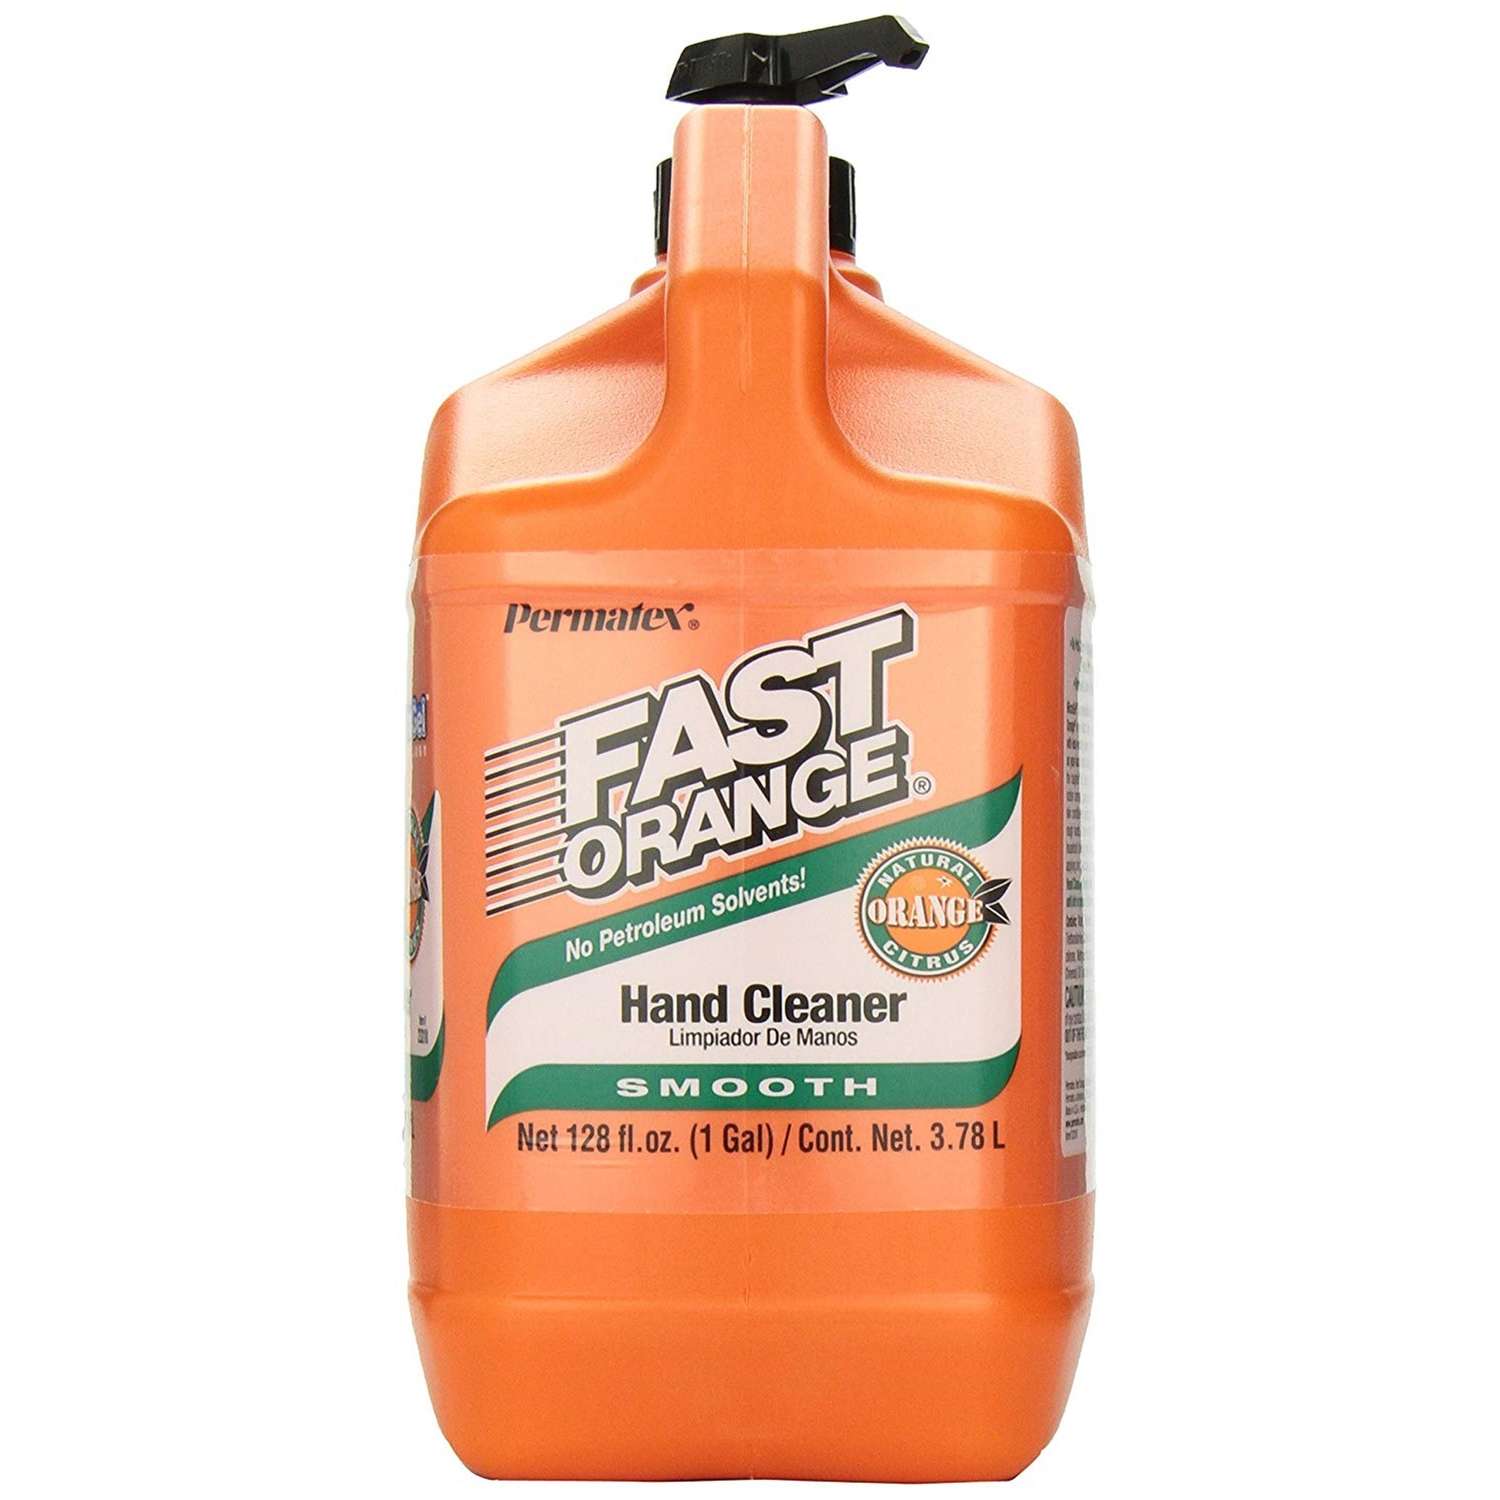 PERMATEX Fast Orange Smooth Orange Citrus Hand Cleaner, 1/2 Gal